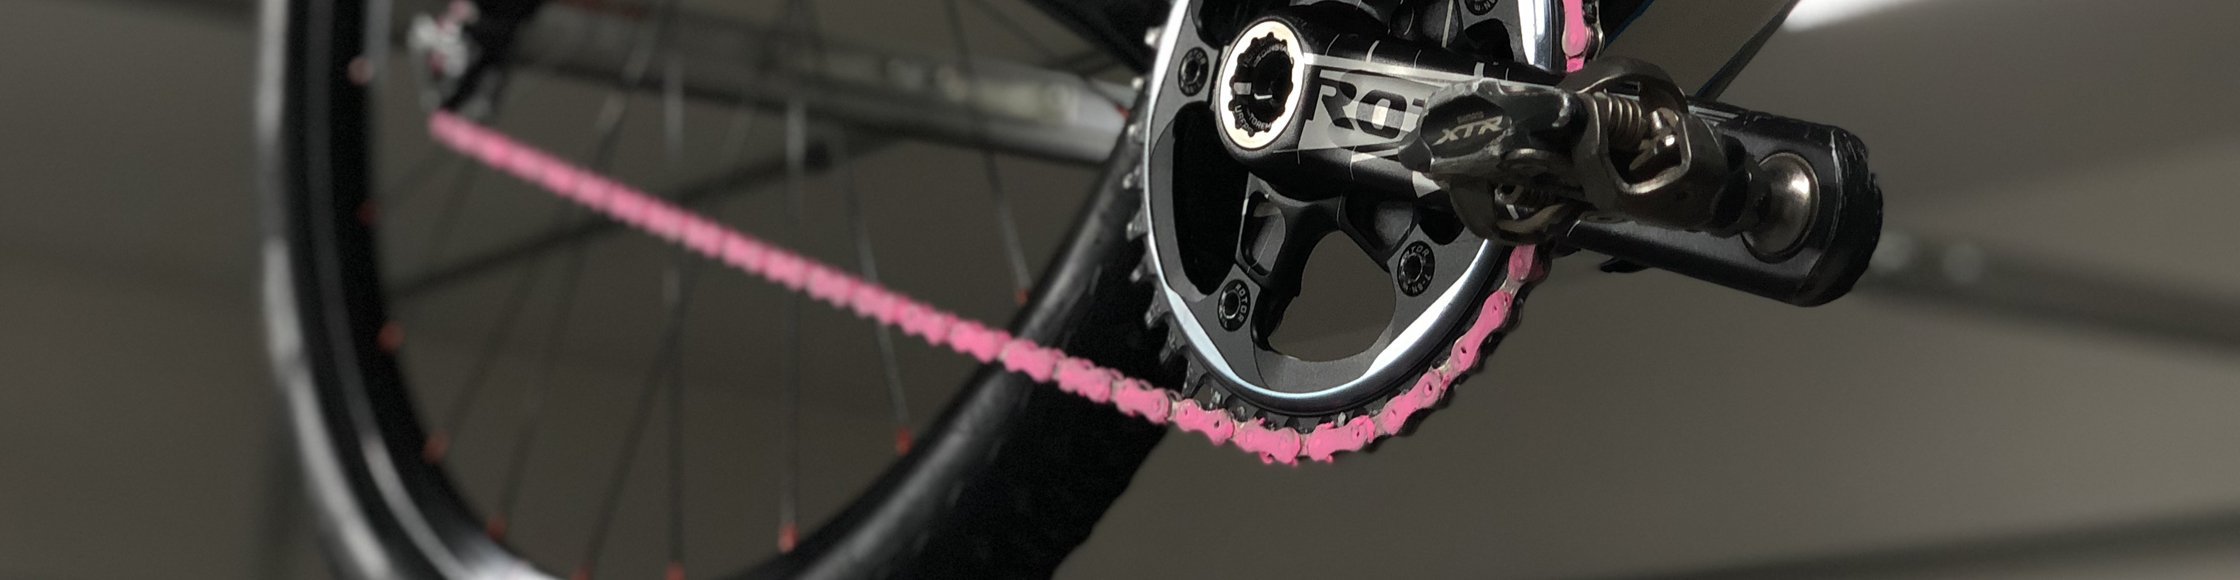 WendWax Schmiermittel und Farbe für Fahrradketten